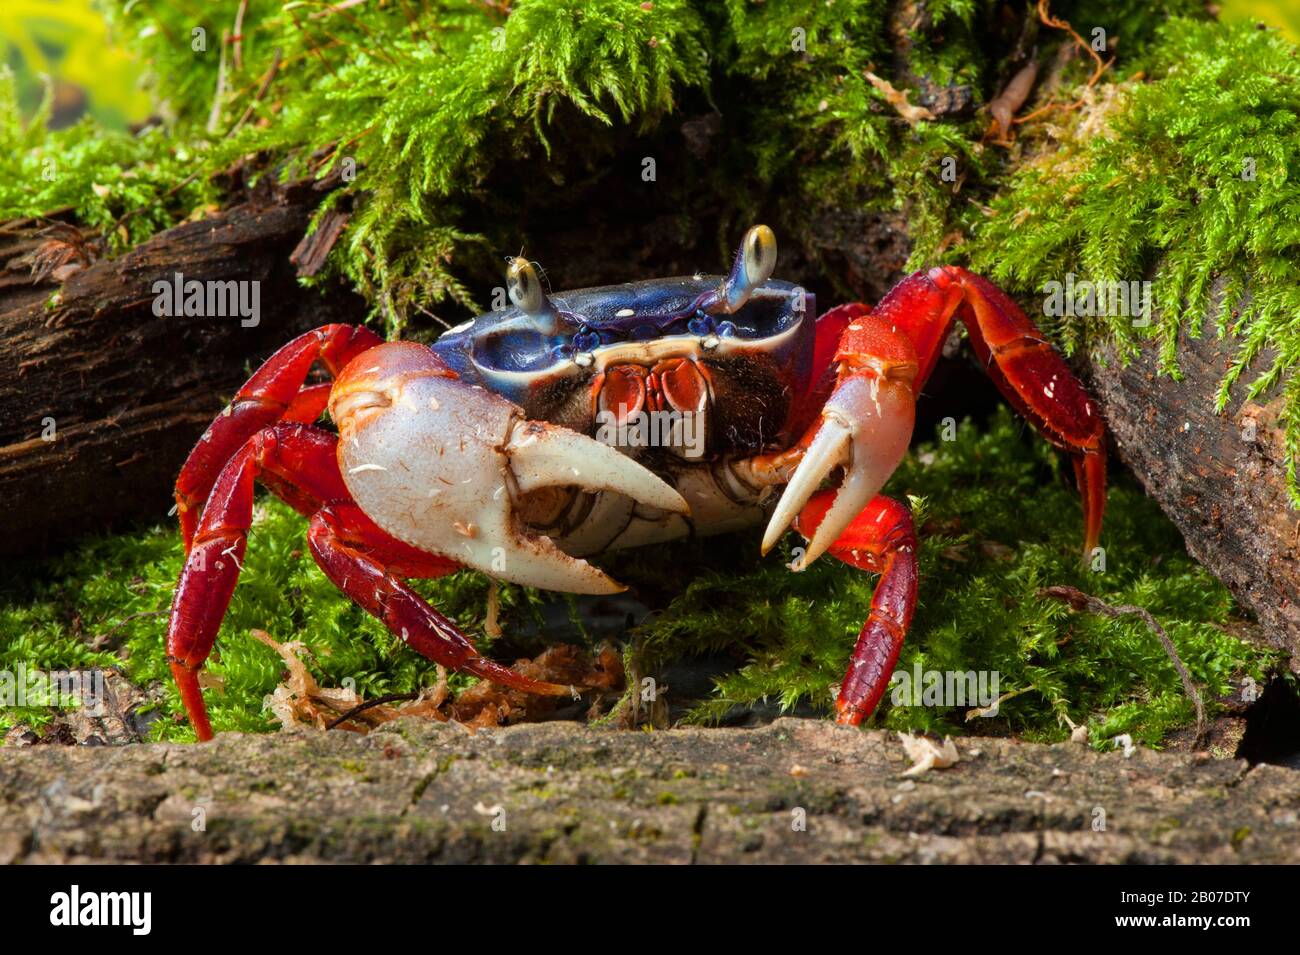 rainbow crab, West African rainbow crab (Cardisoma armatum), in terrarium Stock Photo